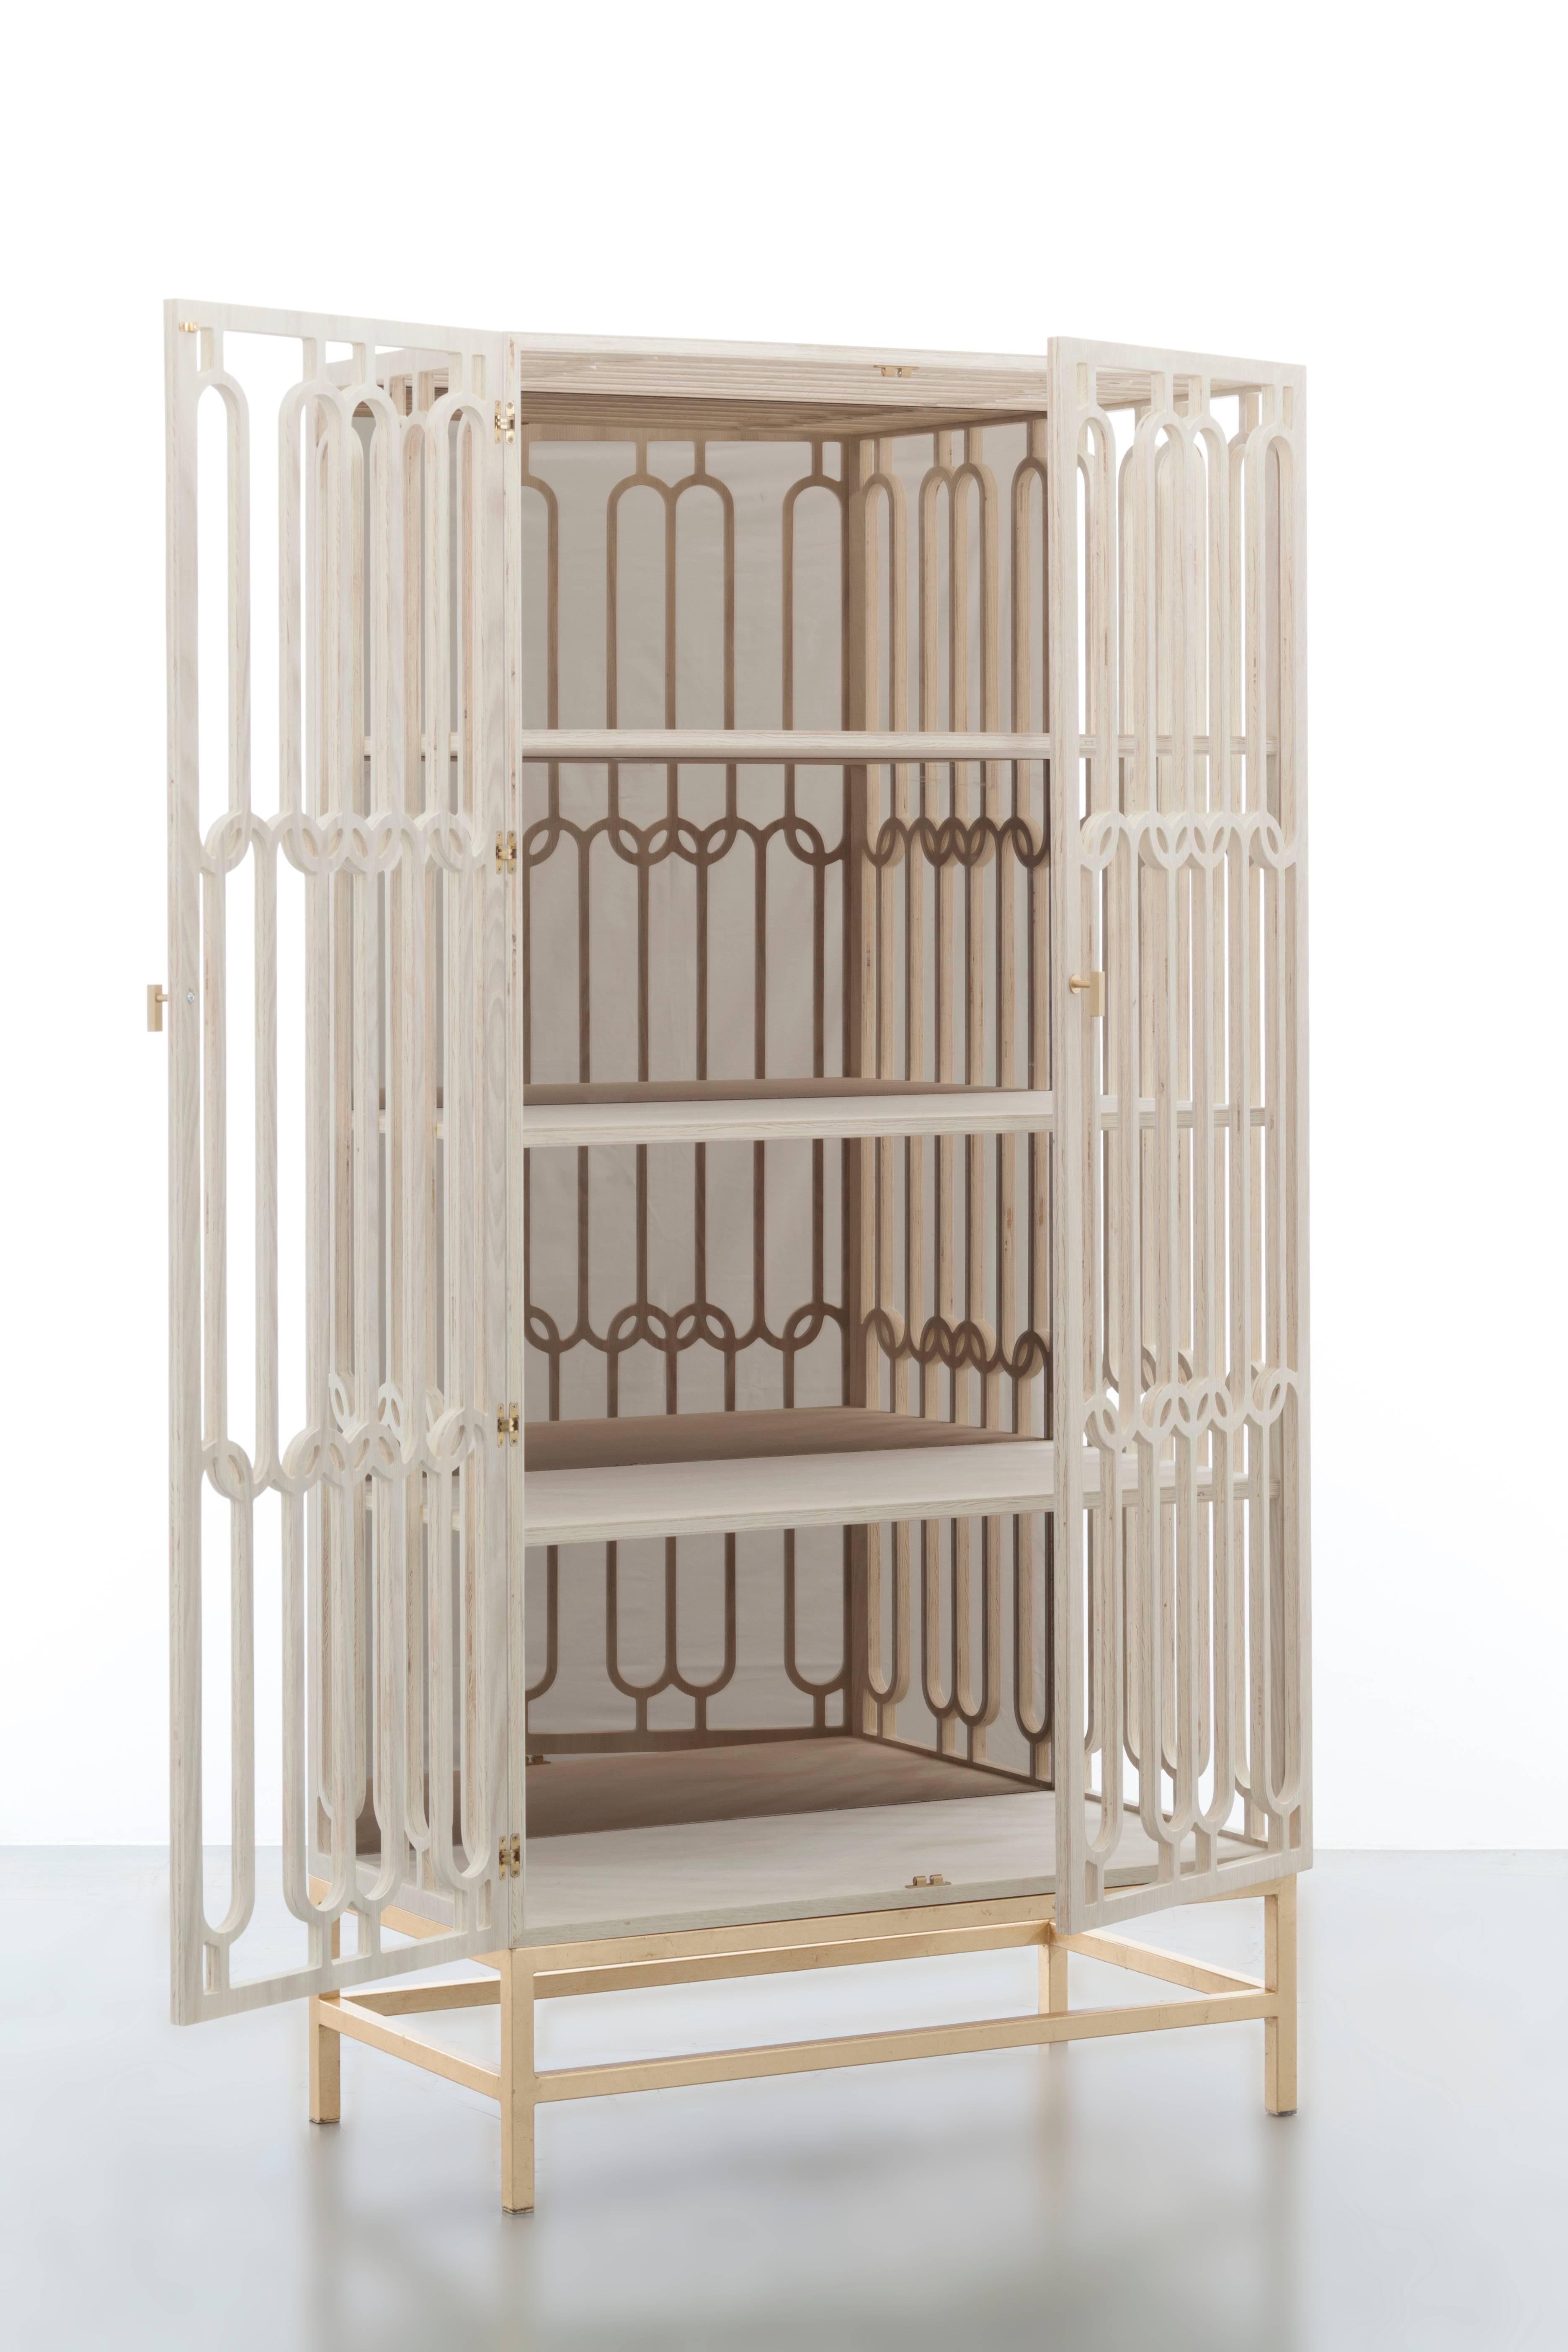 CHLOE CABINET - Cabinet moderne en chêne blanchi avec design géométrique Latitce

L'armoire Chloe est un meuble époustouflant qui arbore un design moderne unique en forme de treillis en chêne blanc blanchi. Il est doté d'une base en feuilles d'or et